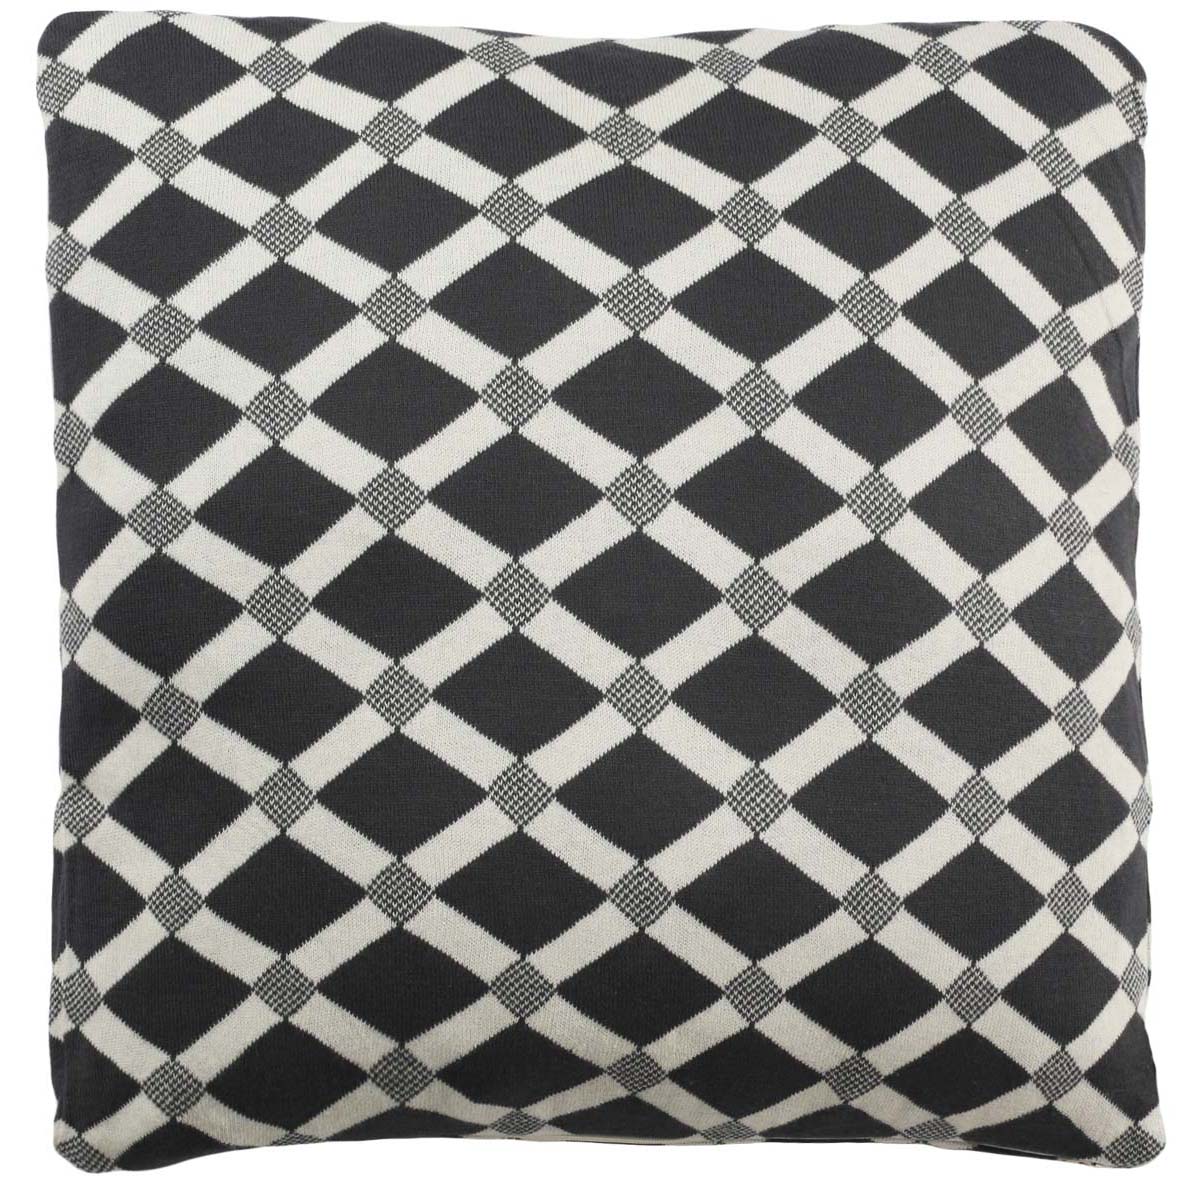 Safavieh Diamond Knit Pillow